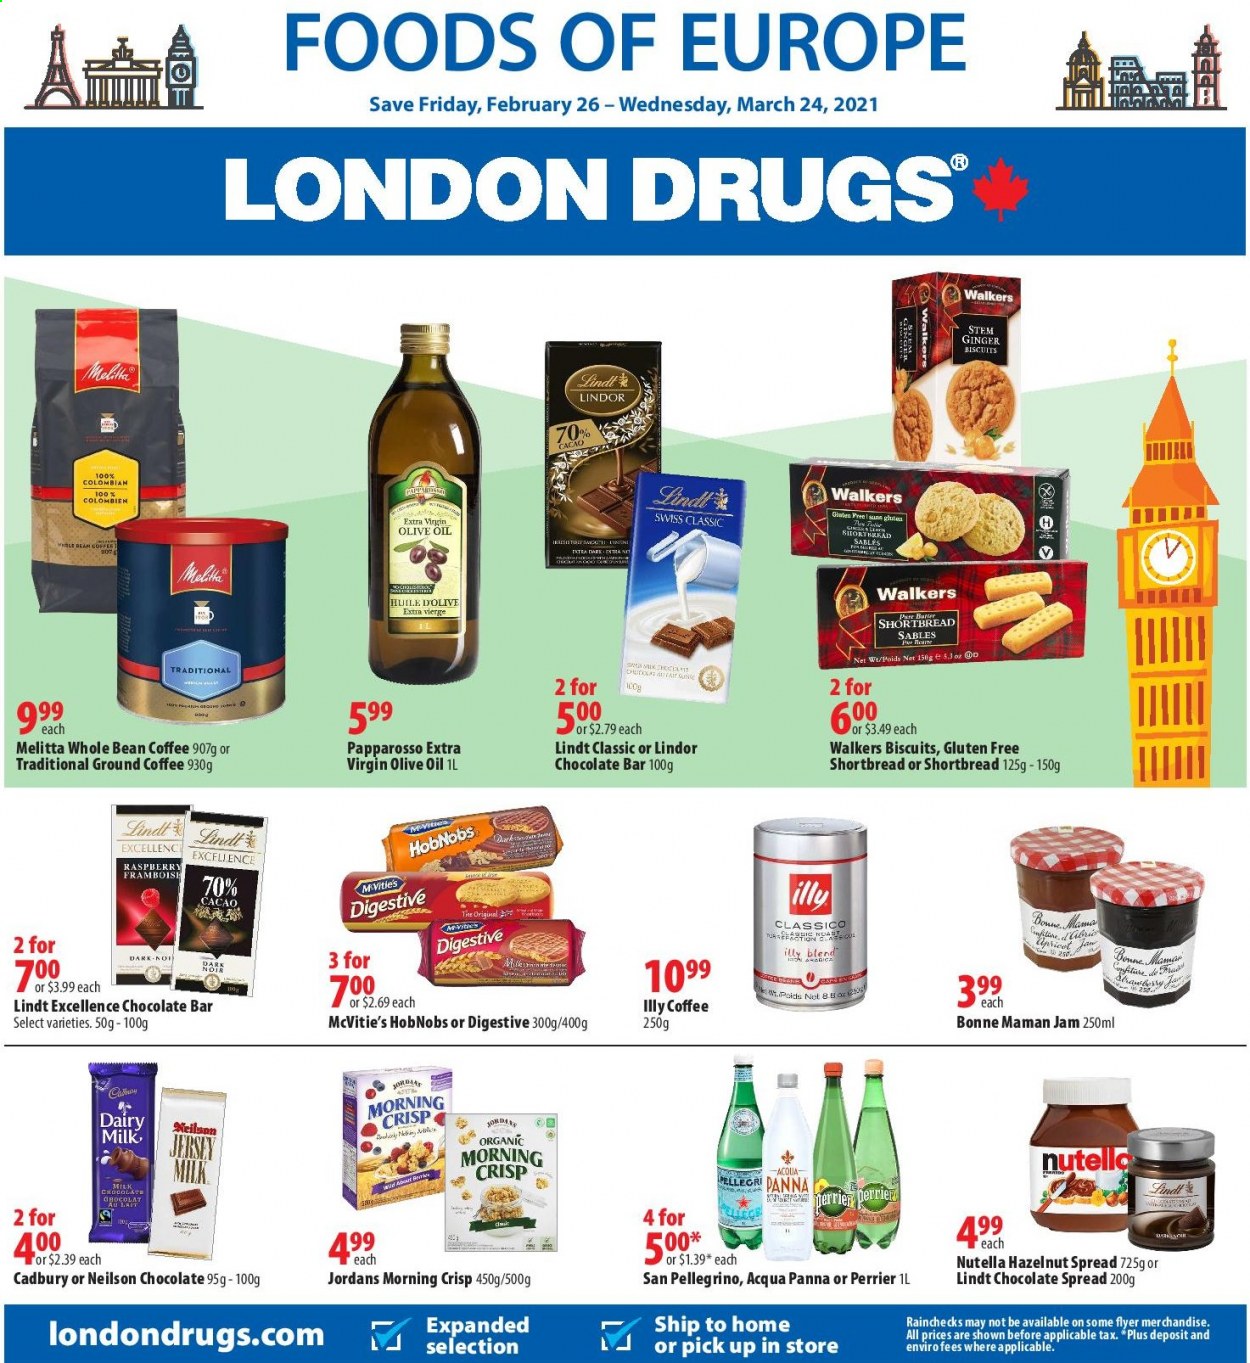 thumbnail - Circulaire London Drugs - 26 Février 2021 - 24 Mars 2021 - Produits soldés - biscuits, cacao, Jordans, huile d'olive, Perrier, huile, sablés, San Pellegrino, Nutella, Lindor, Lindt. Page 1.